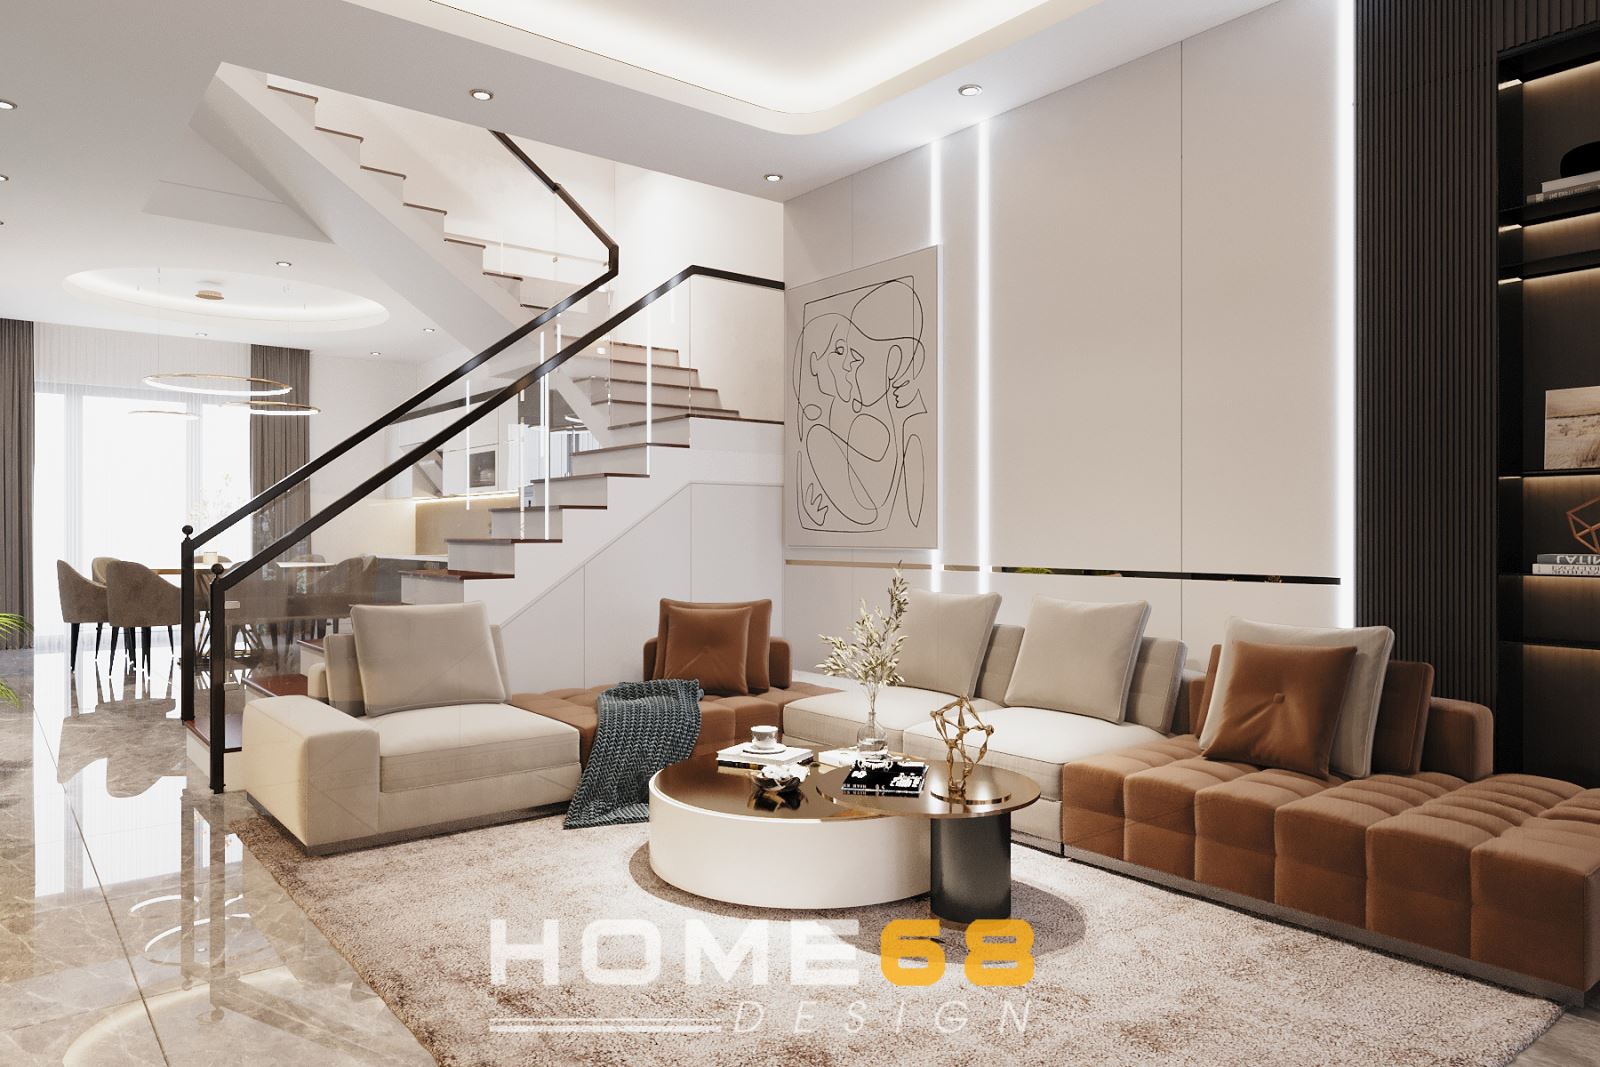 HOME68 thiết kế nội thất phòng khách hiện đại, thanh lịch